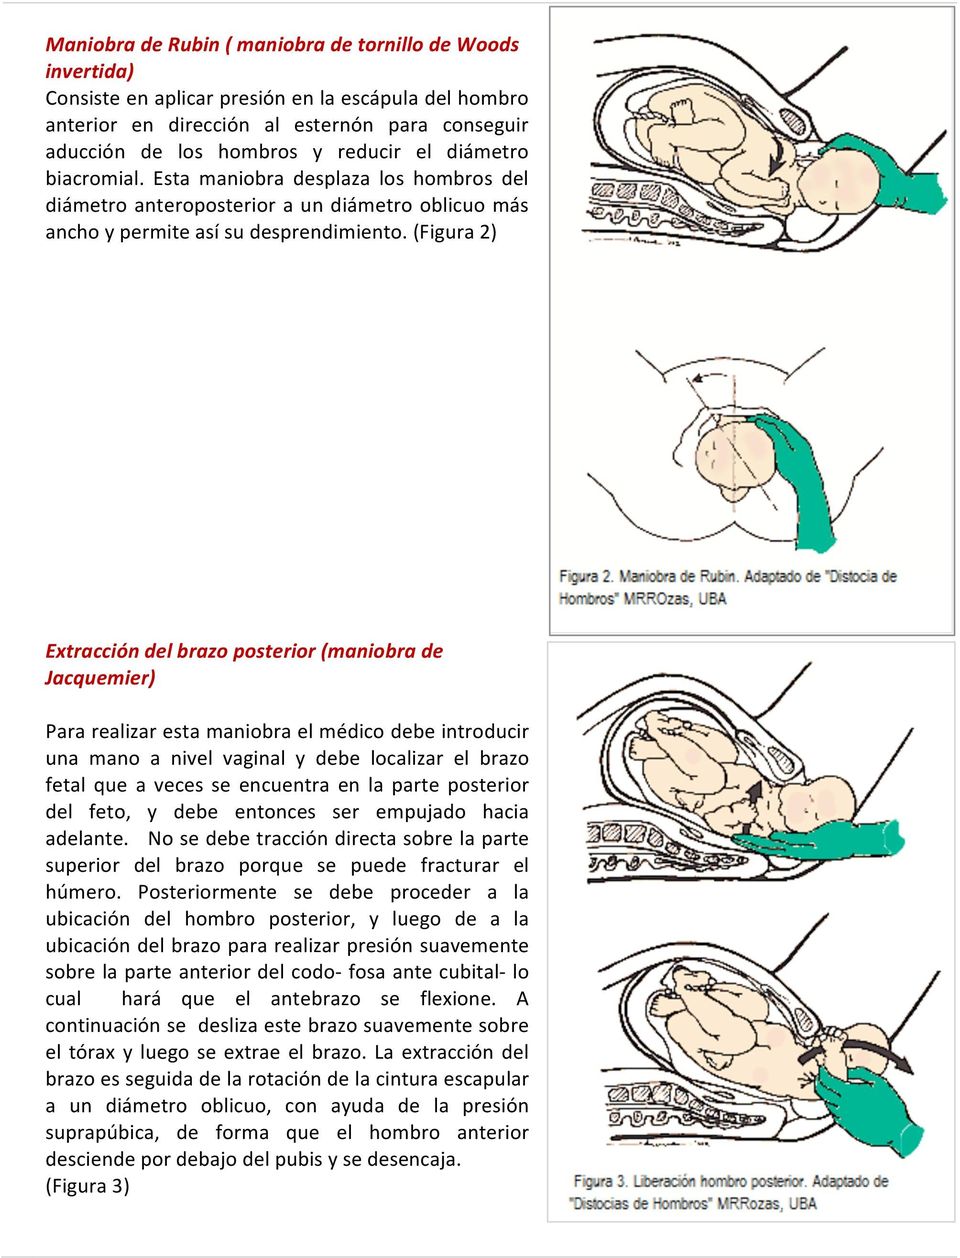 (Figura 2) Extracción del brazo posterior (maniobra de Jacquemier) Para realizar esta maniobra el médico debe introducir una mano a nivel vaginal y debe localizar el brazo fetal que a veces se